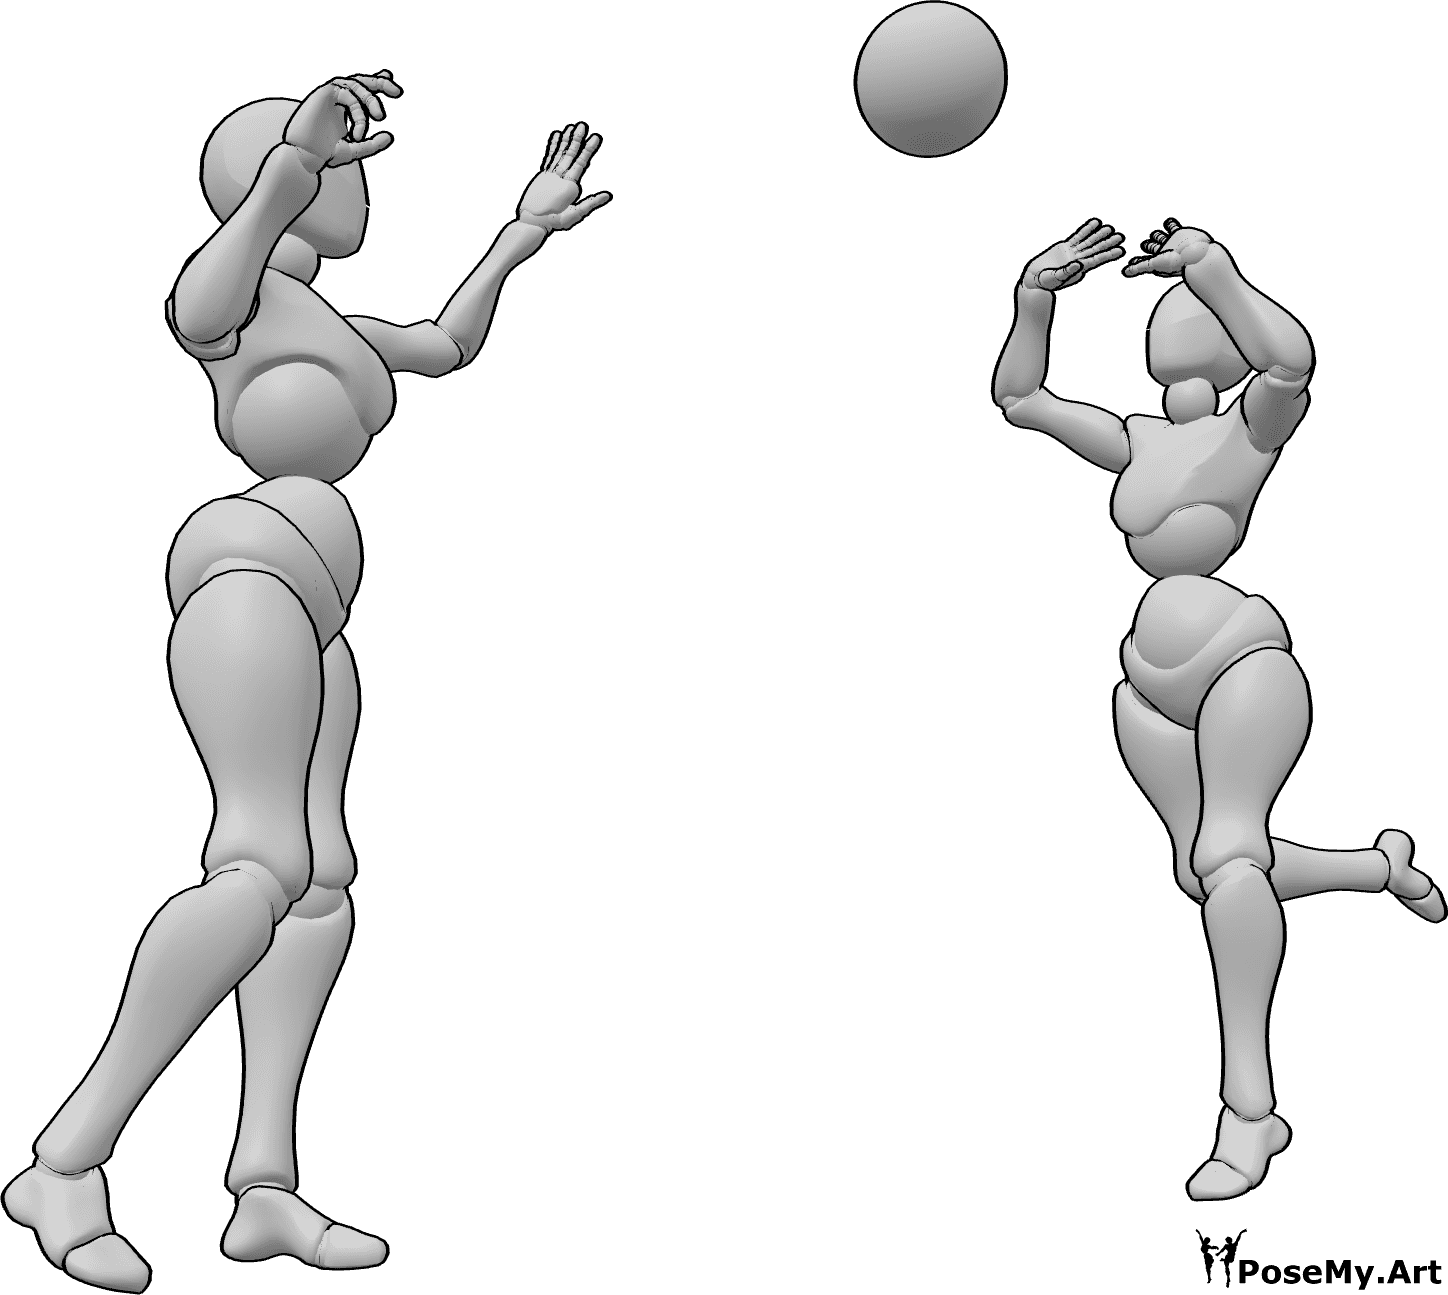 Posen-Referenz- Frauen werfen Ball Pose - Zwei Frauen spielen mit einem Ball, den sie sich gegenseitig zuspielen.